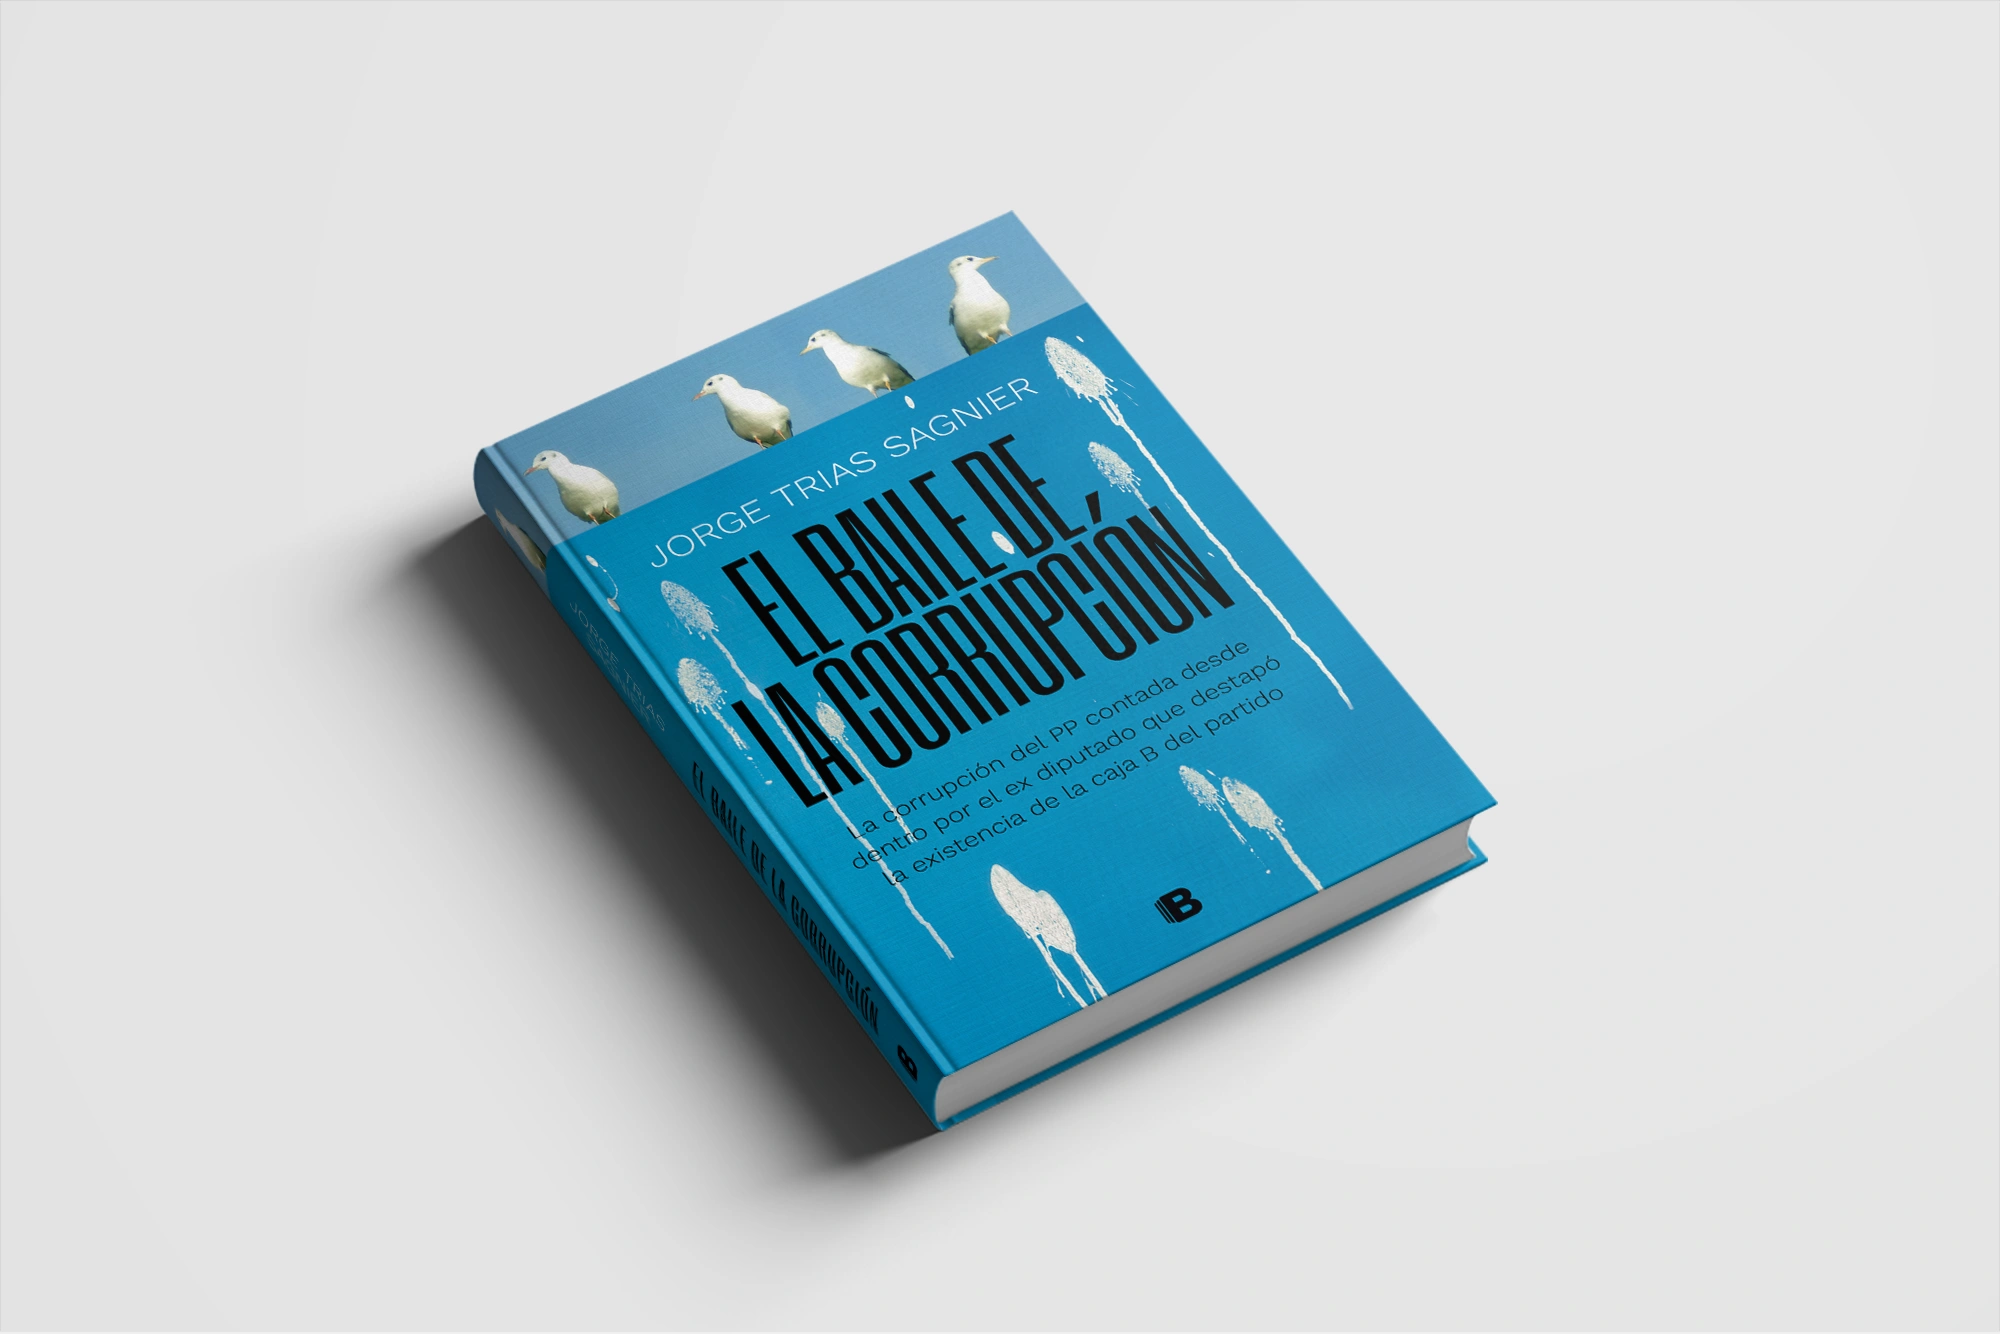 Diseño editorial de la cubierta del libro "El baile de la corrupción" Ediciones B